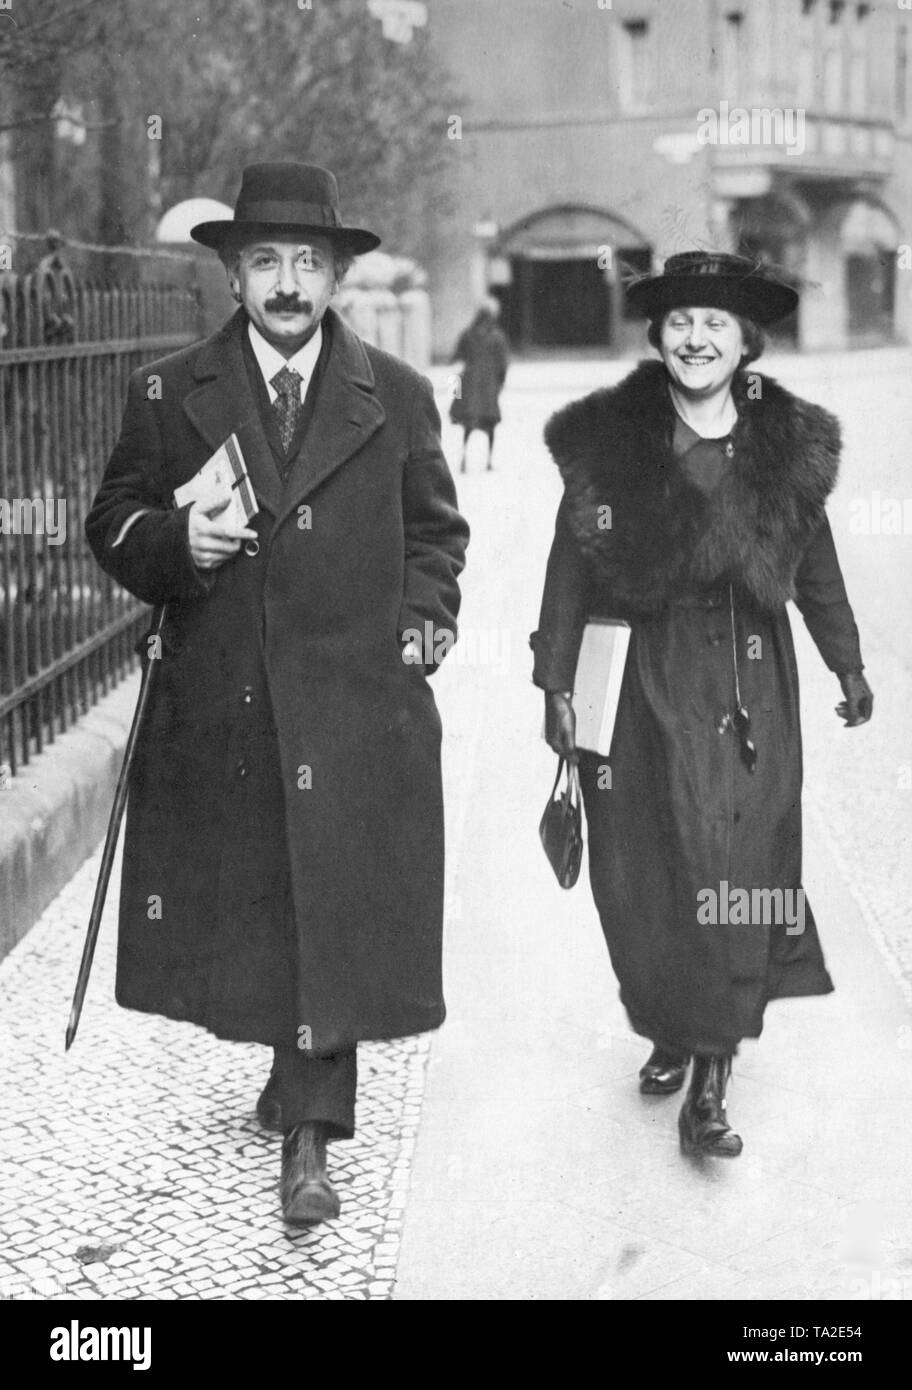 Der deutsche Physiker und Nobelpreisträger Albert Einstein (1879-1955) und seiner Frau in Berlin, vermutlich in der Haberlandstraße im Bayerischen Viertel in Berlin. Stockfoto